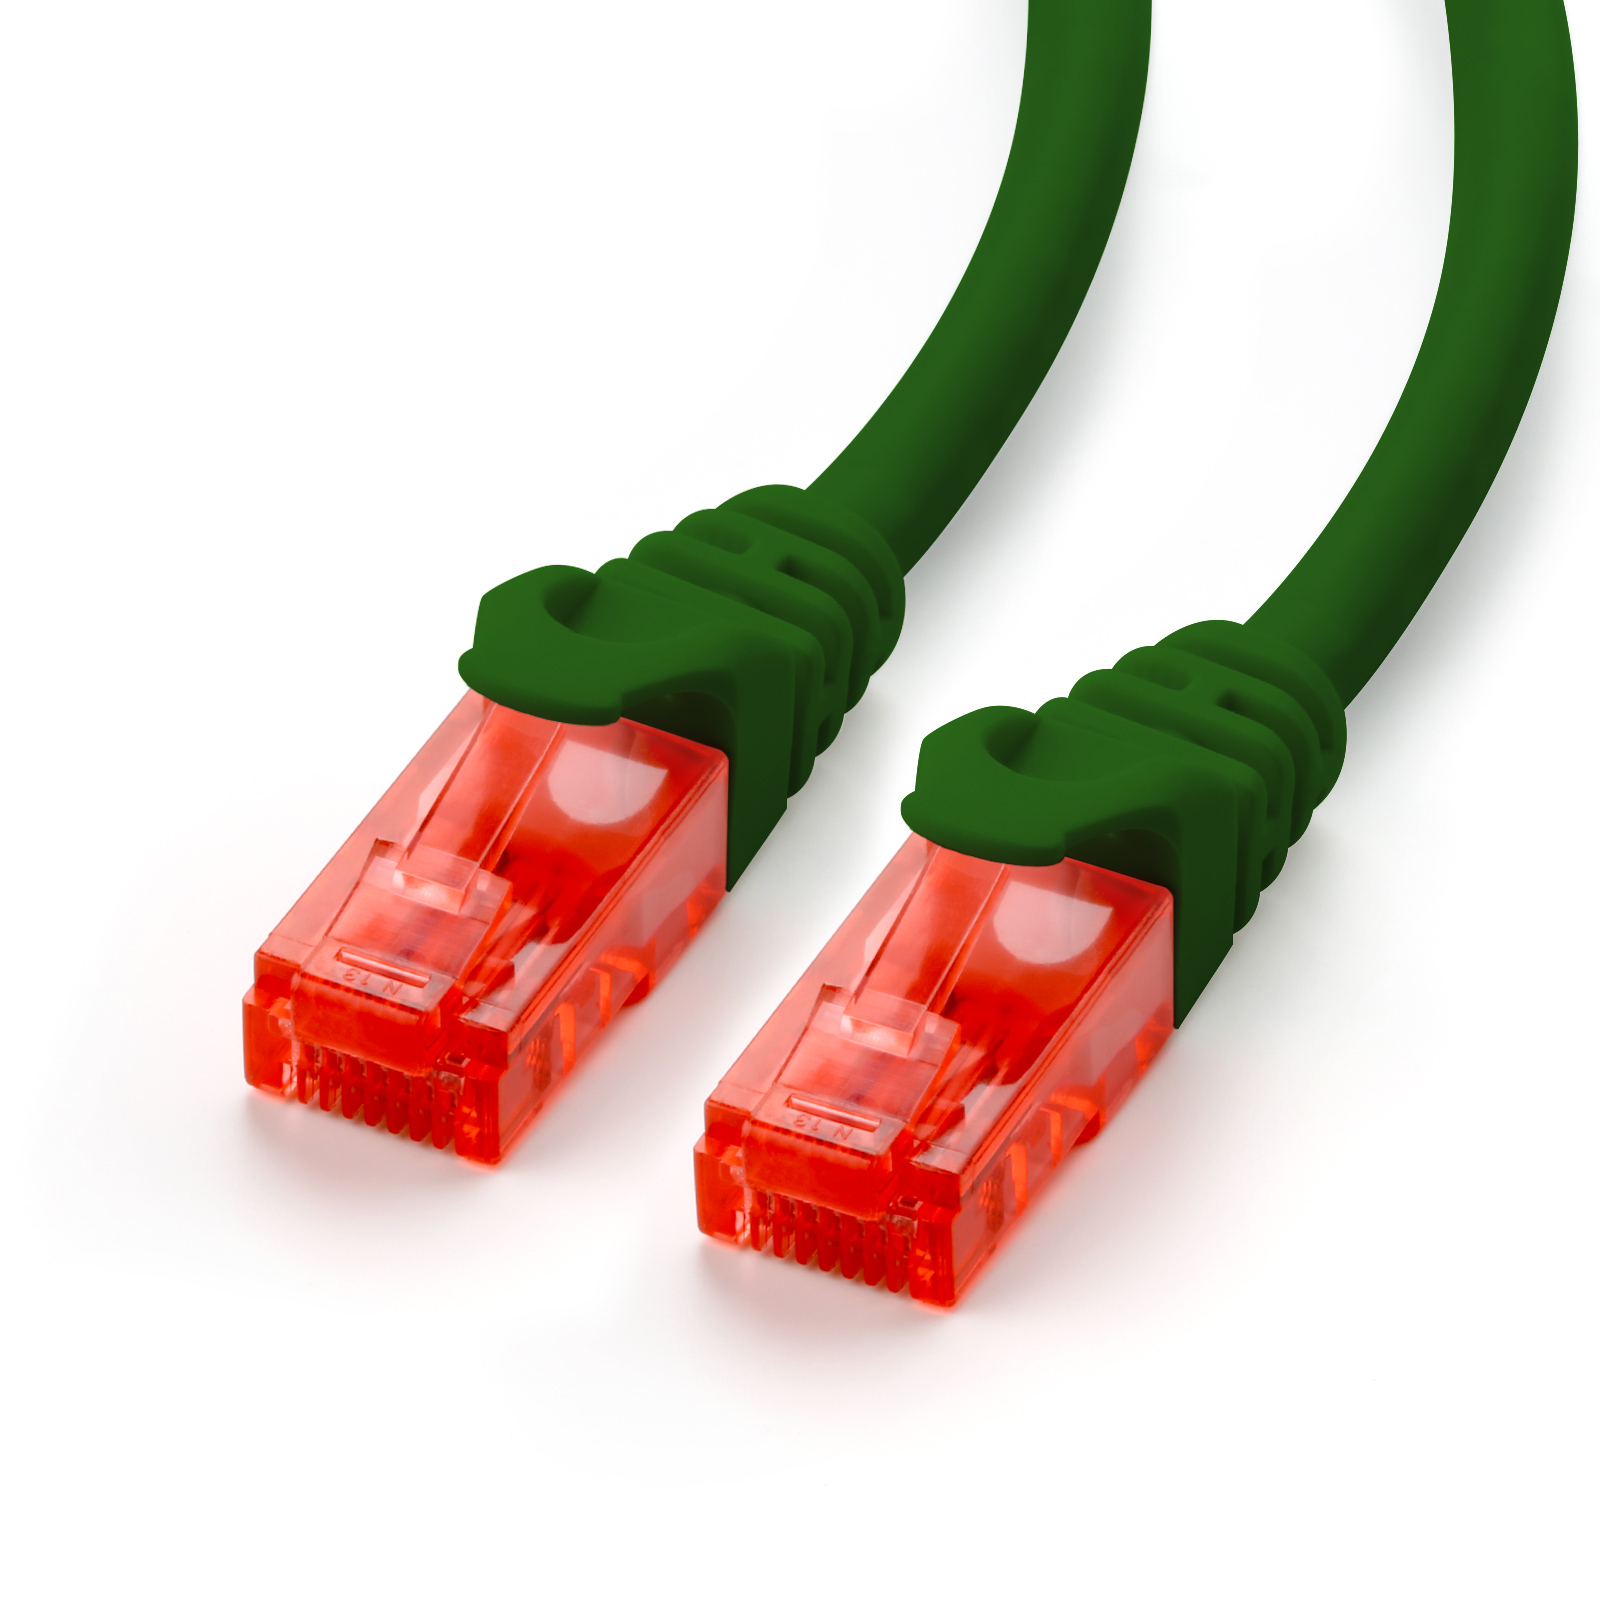 Cat6 10m LAN Kabel, CSL grün Patchkabel,